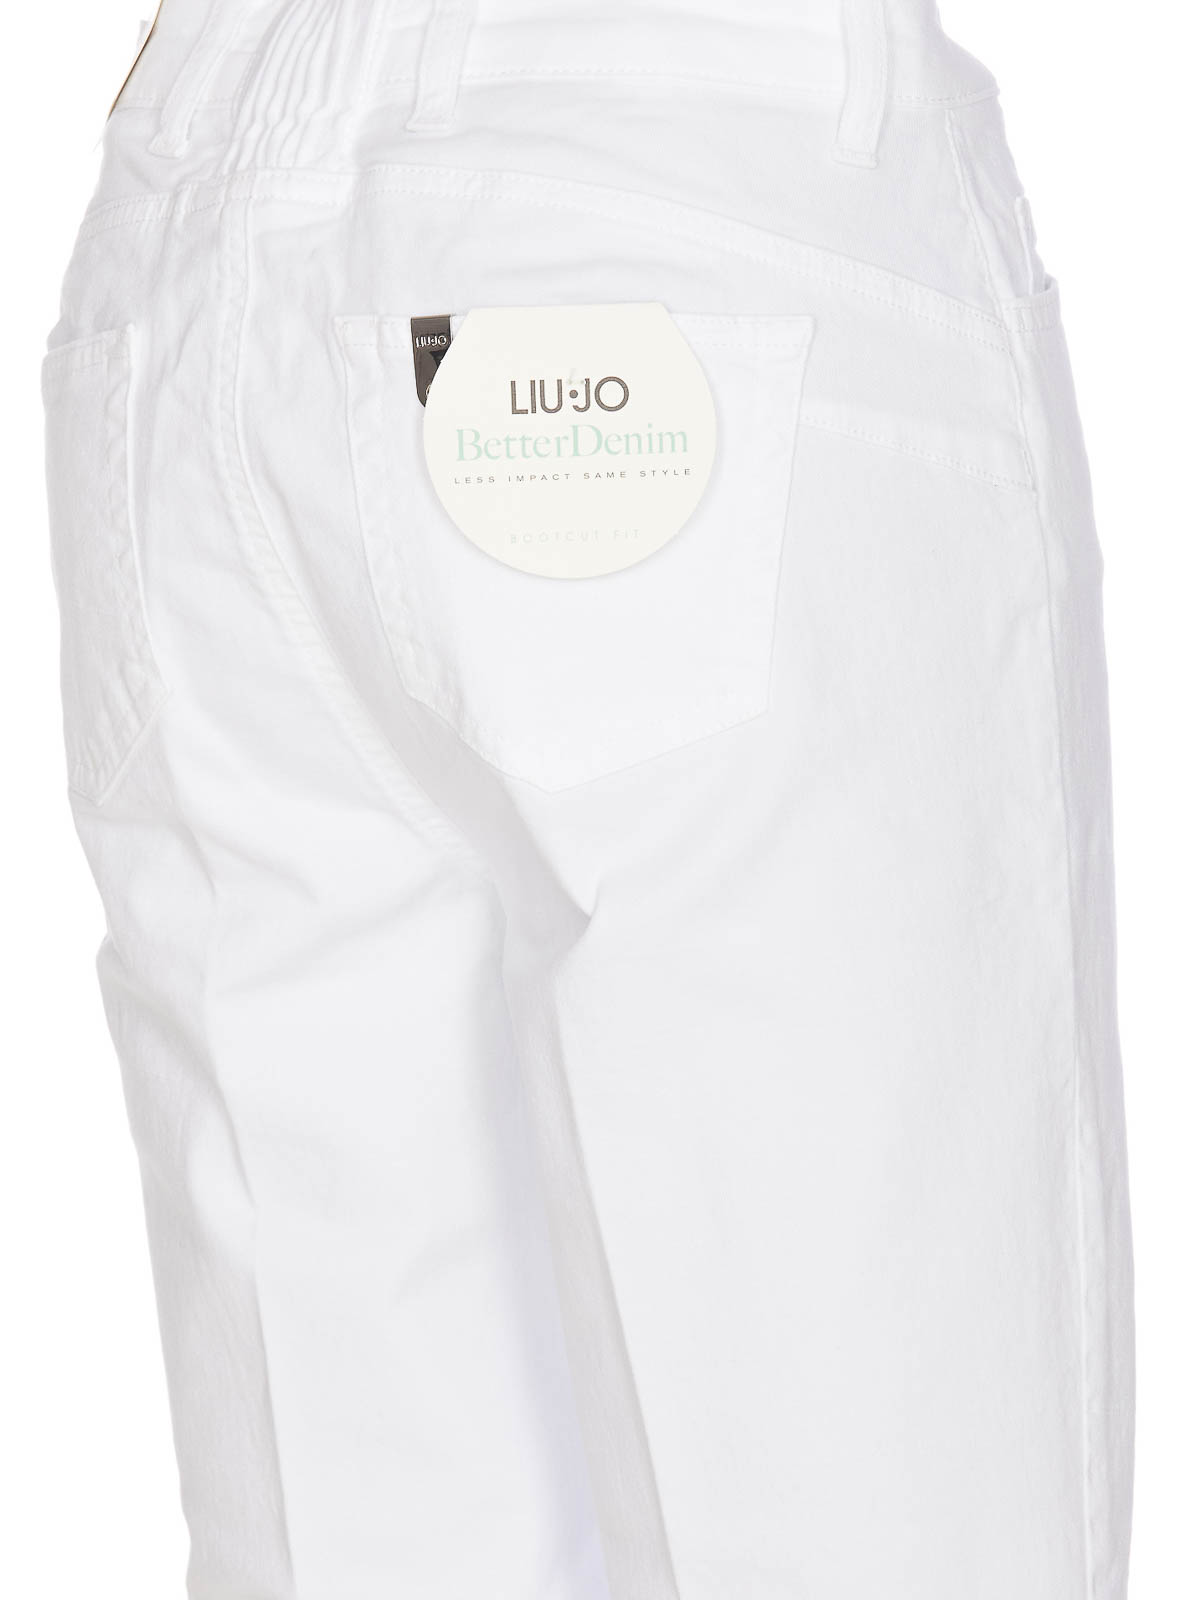 Shop Liu •jo White Parfait Princess Jeans